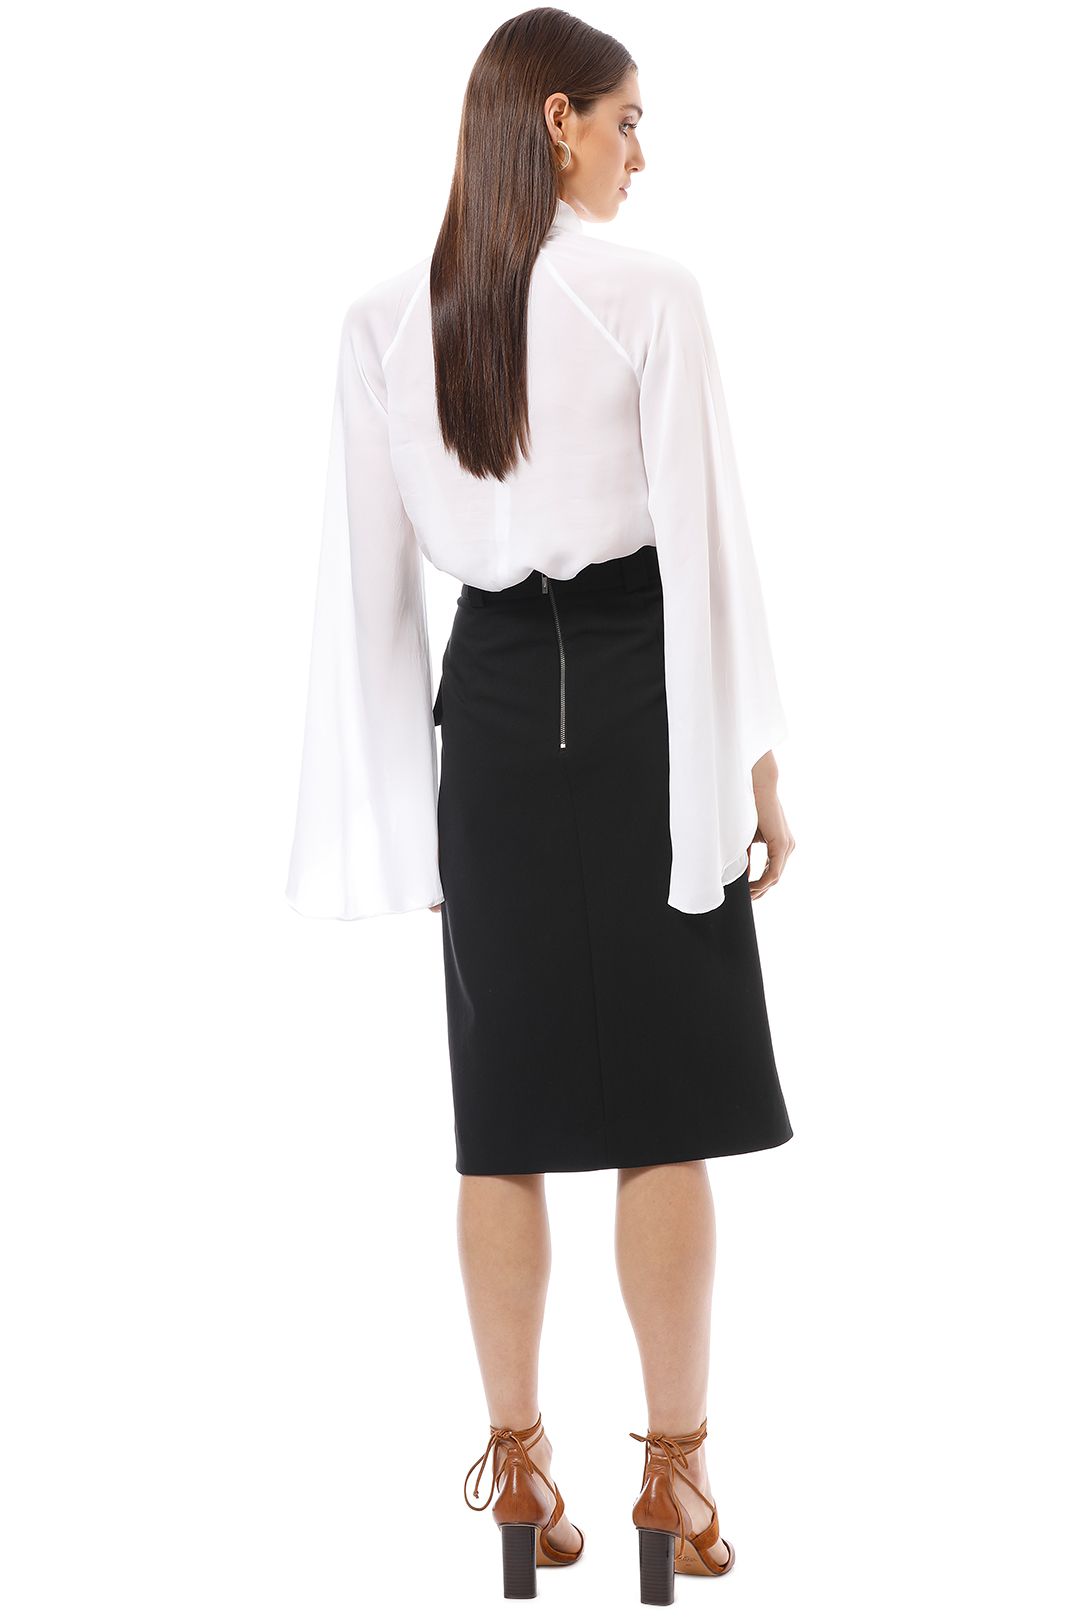 Cue - Split Front A-Line Skirt - Black - Back